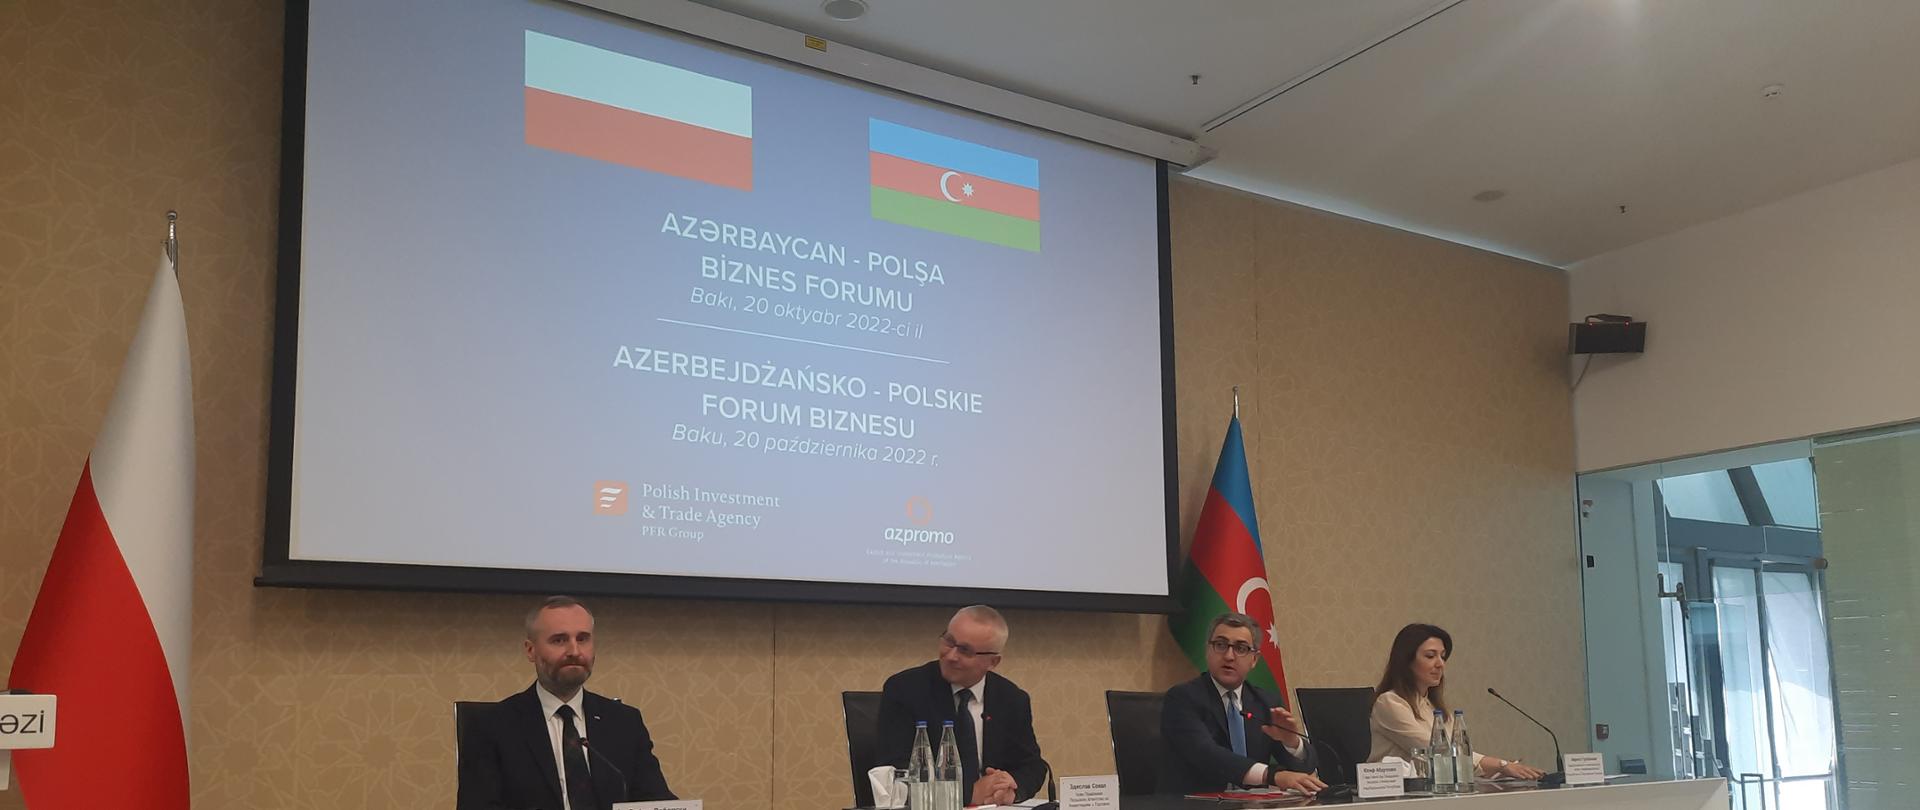 Polsko-Azerbejdżańskie Forum Biznesu (Baku, 20.10.2022)